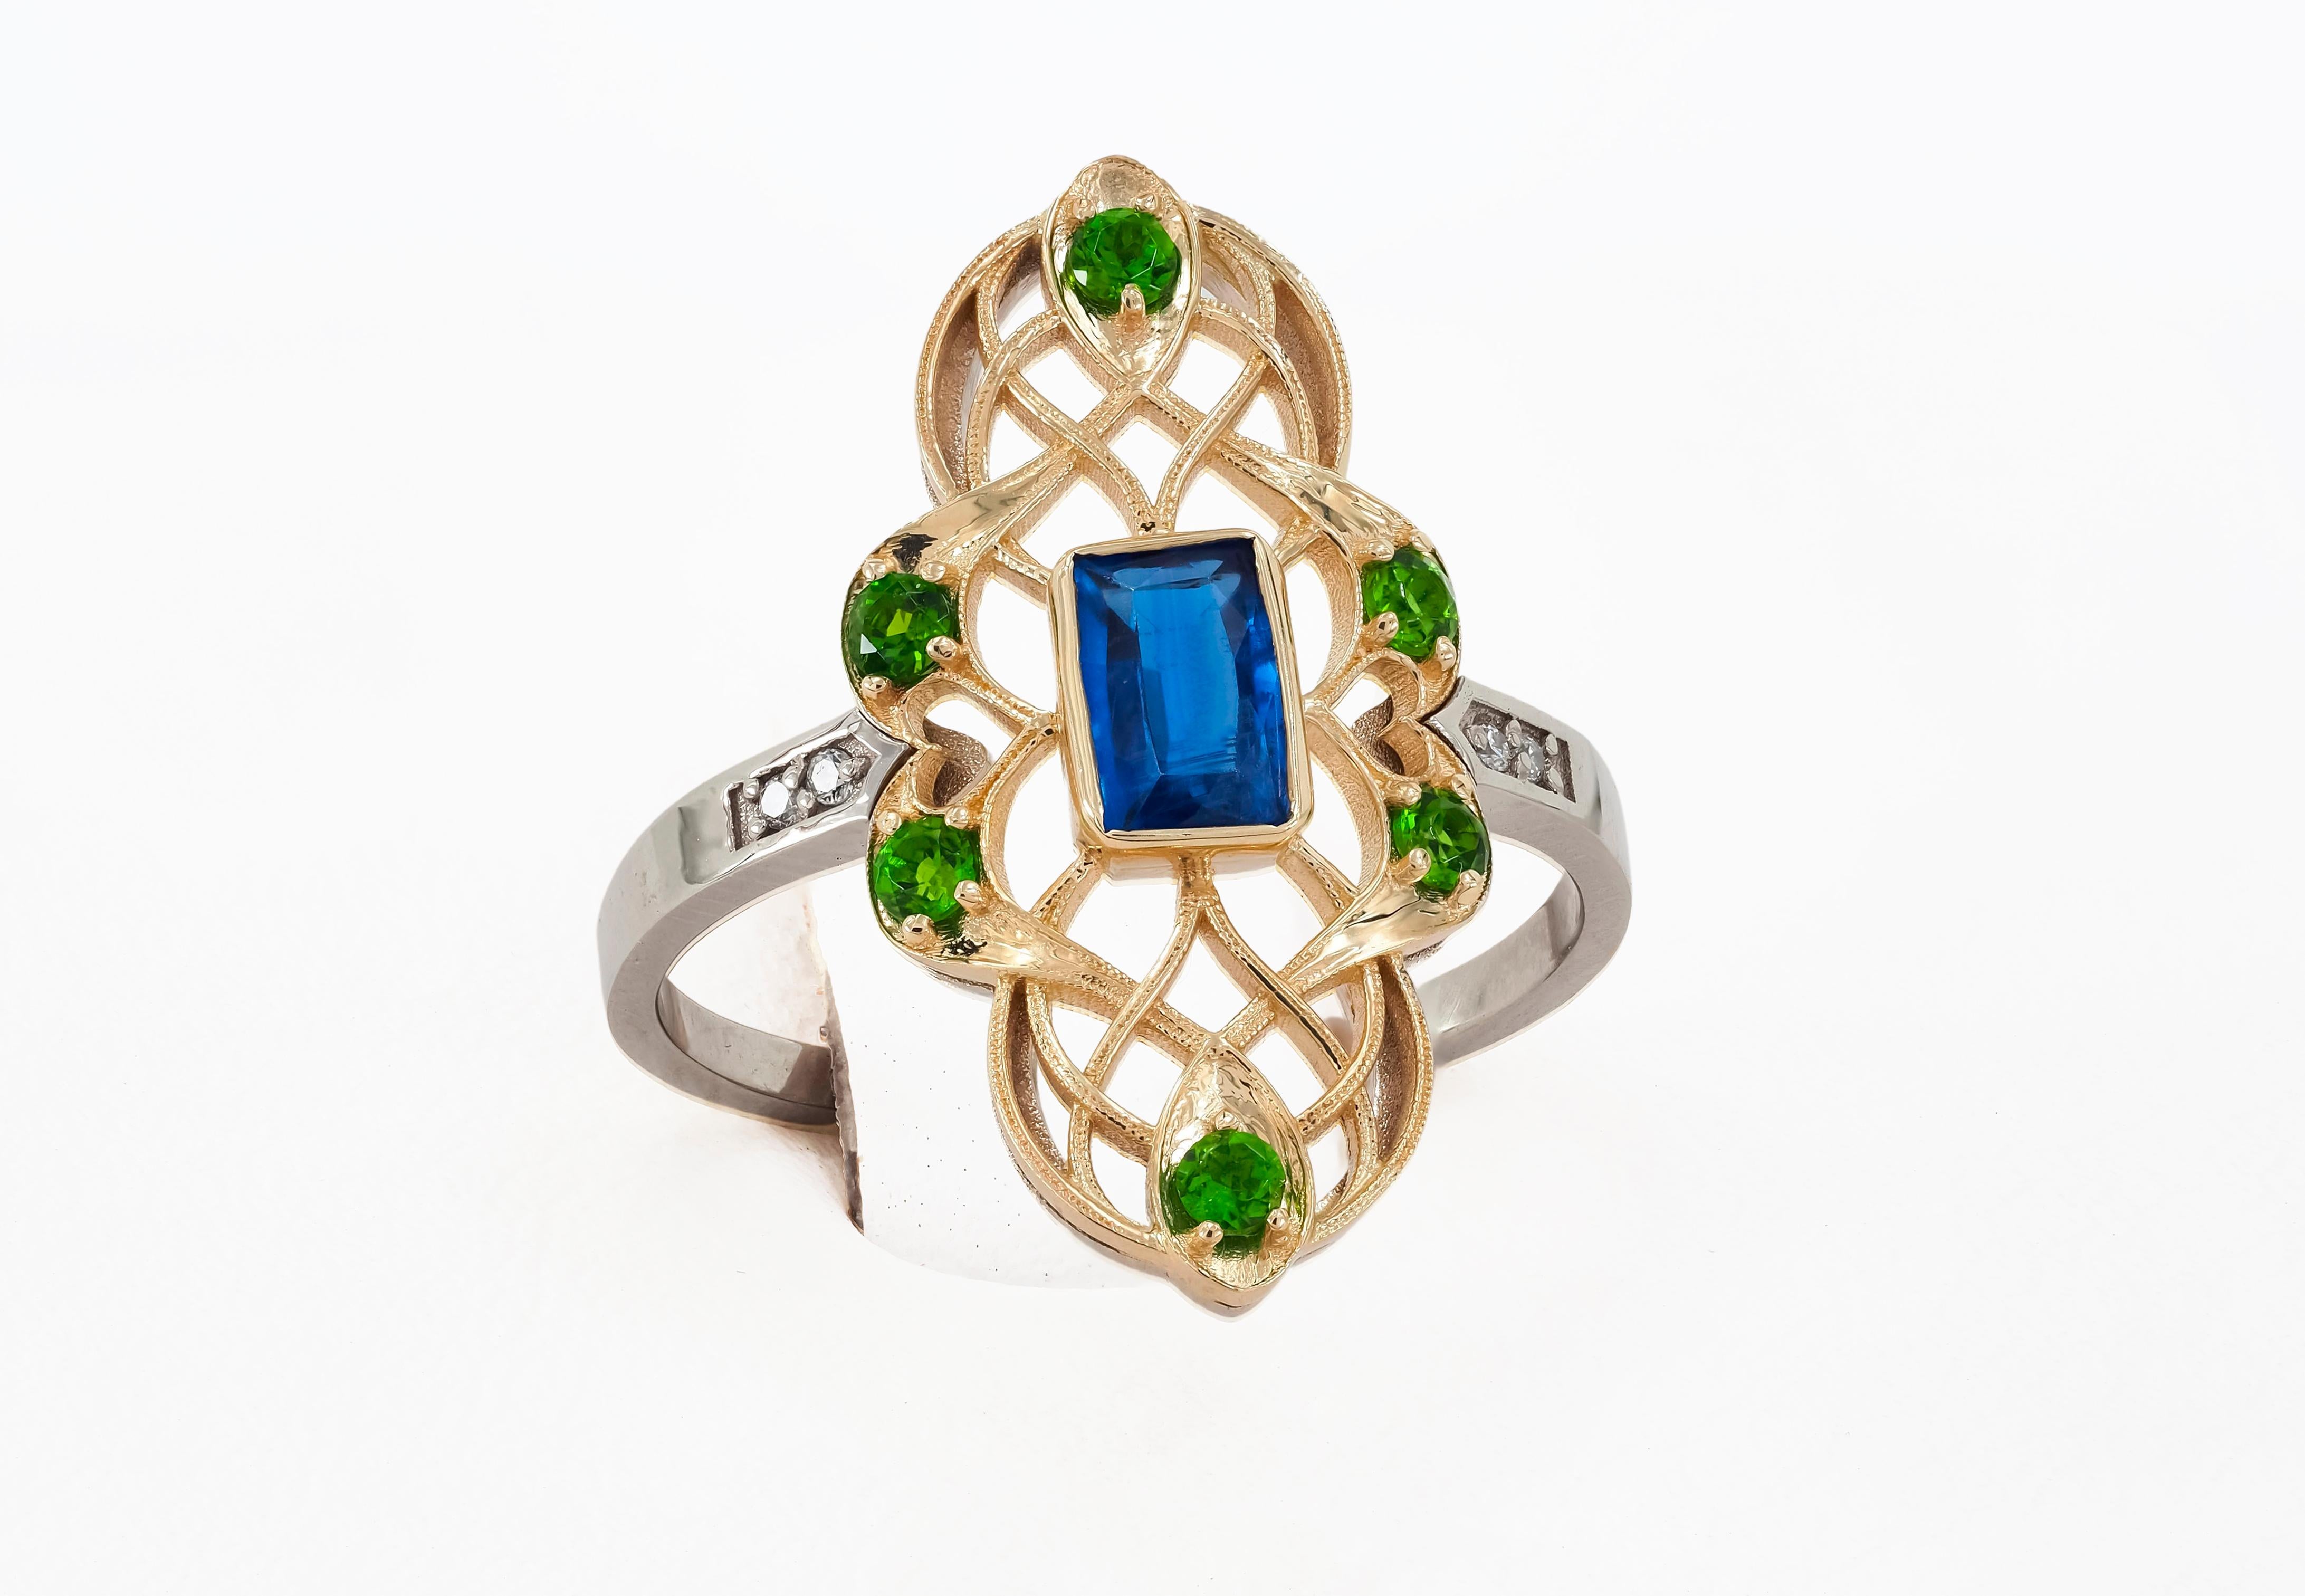 For Sale:  14 Karat Gold Ring with Kyanite, Diamonds. Vintage ring. 8